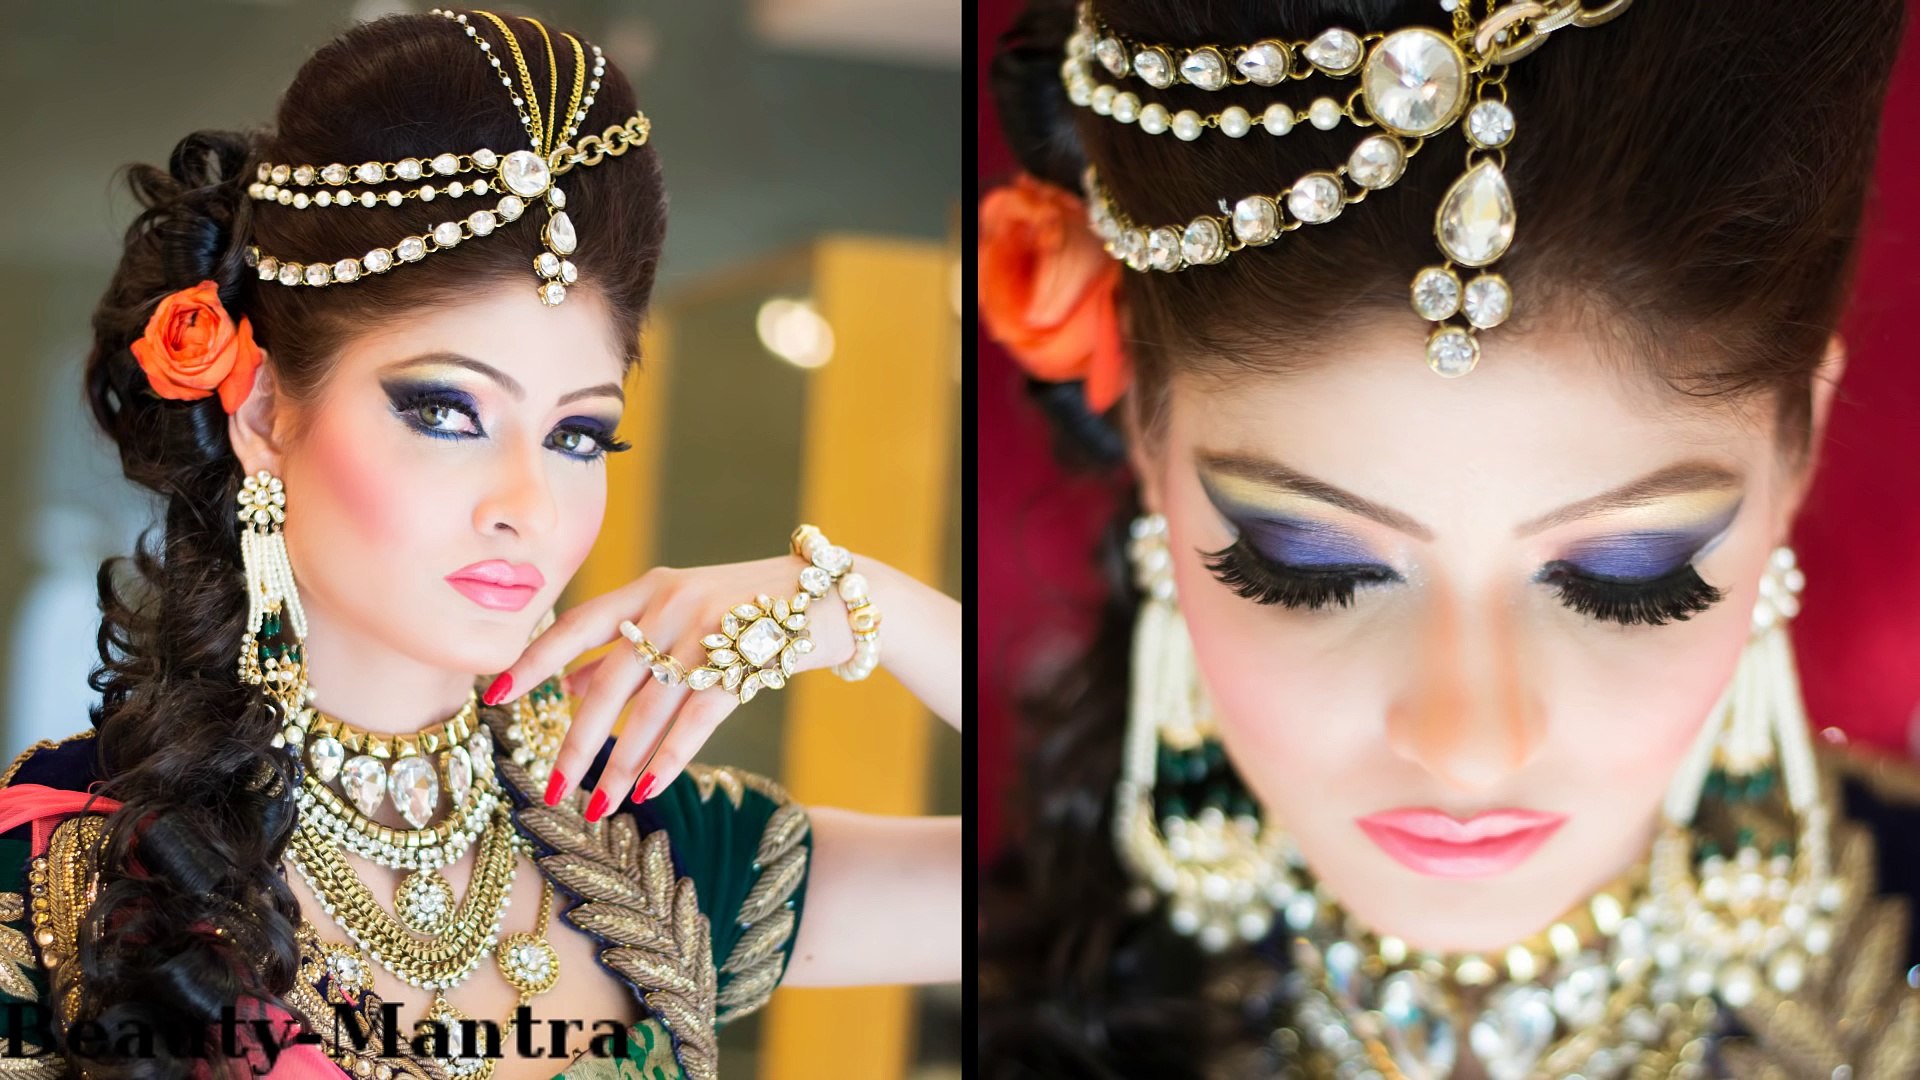 Bridal Makeup - Indian Princess Look I Life With styles | Indian Bridal Wedding Makeup 2016 I Pakist